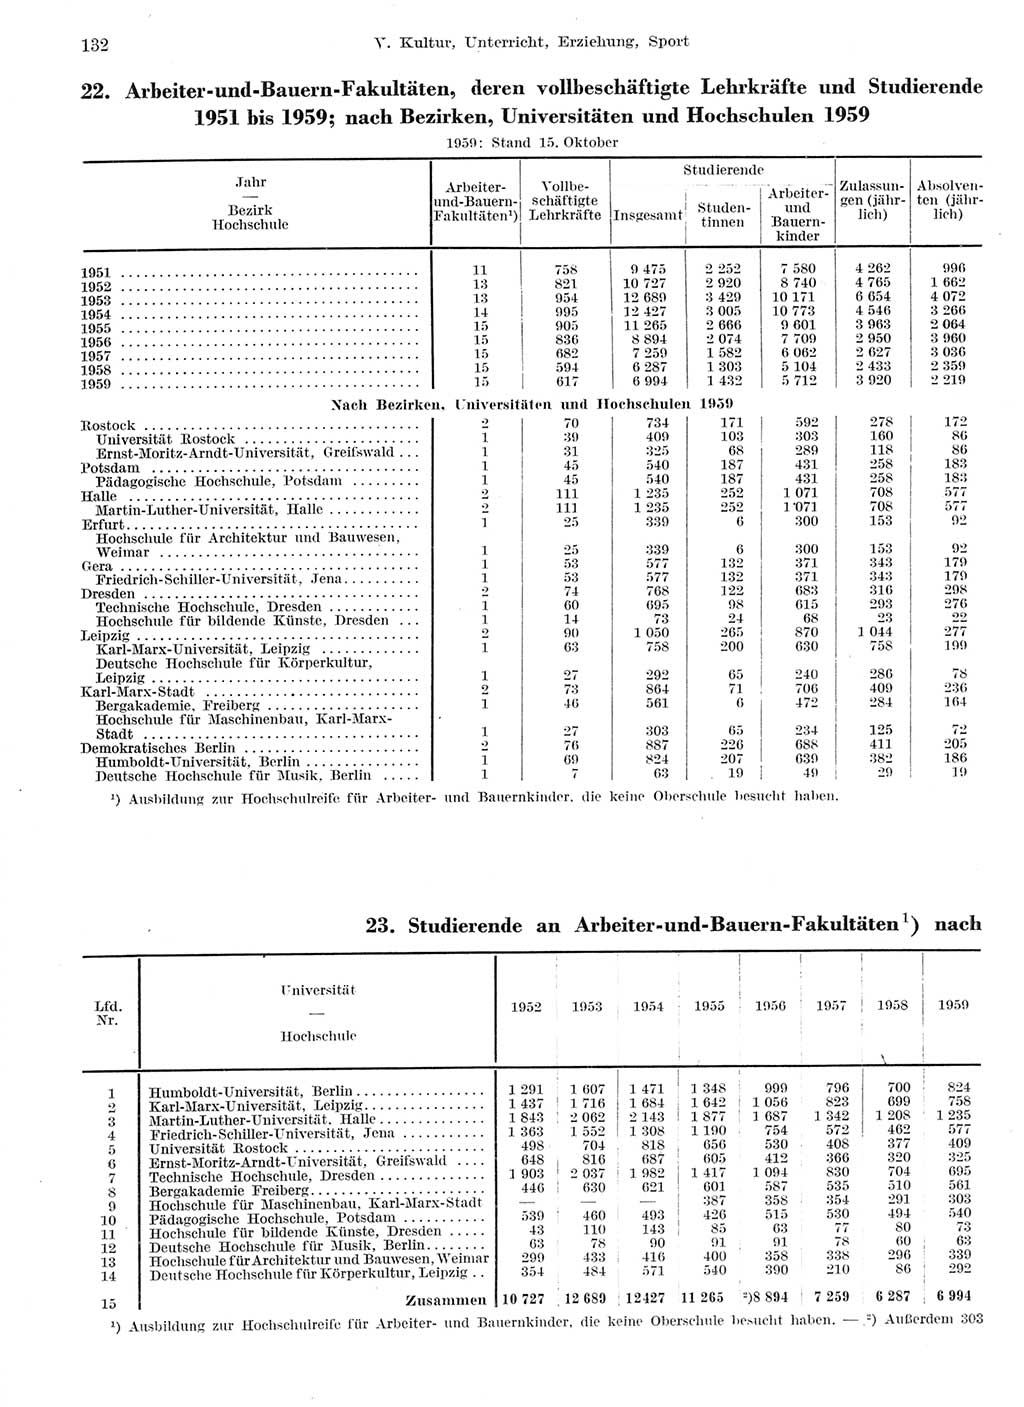 Statistisches Jahrbuch der Deutschen Demokratischen Republik (DDR) 1959, Seite 132 (Stat. Jb. DDR 1959, S. 132)